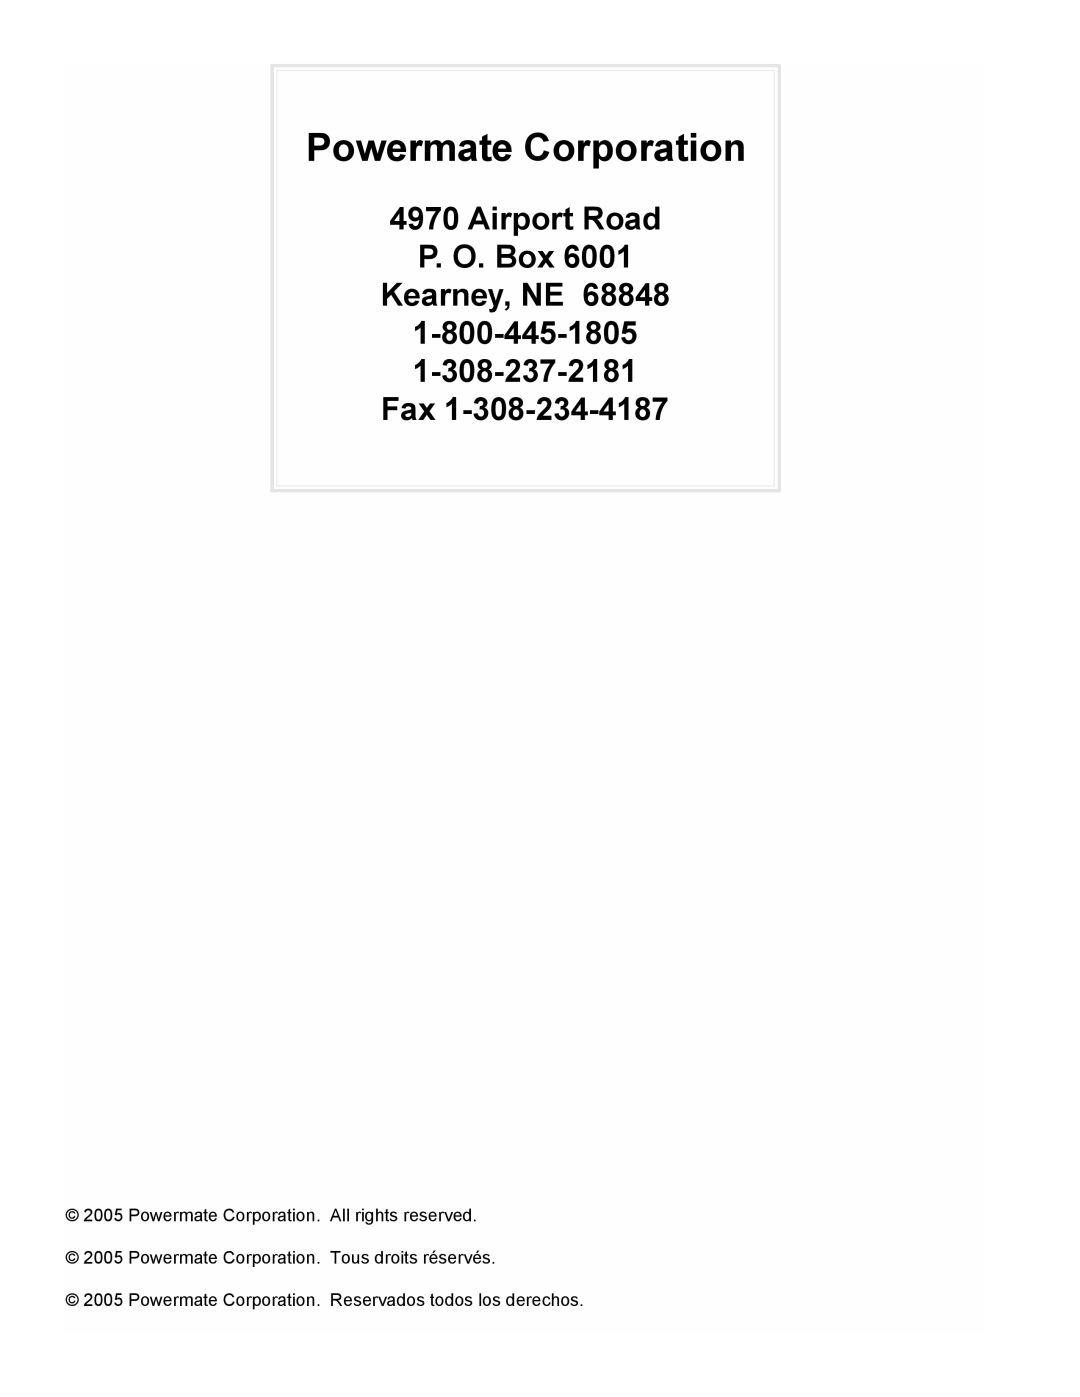 Powermate PMC435250 manual Airport Road P. O. Box Kearney, NE, 1-800-445-1805 1-308-237-2181 Fax, Powermate Corporation 